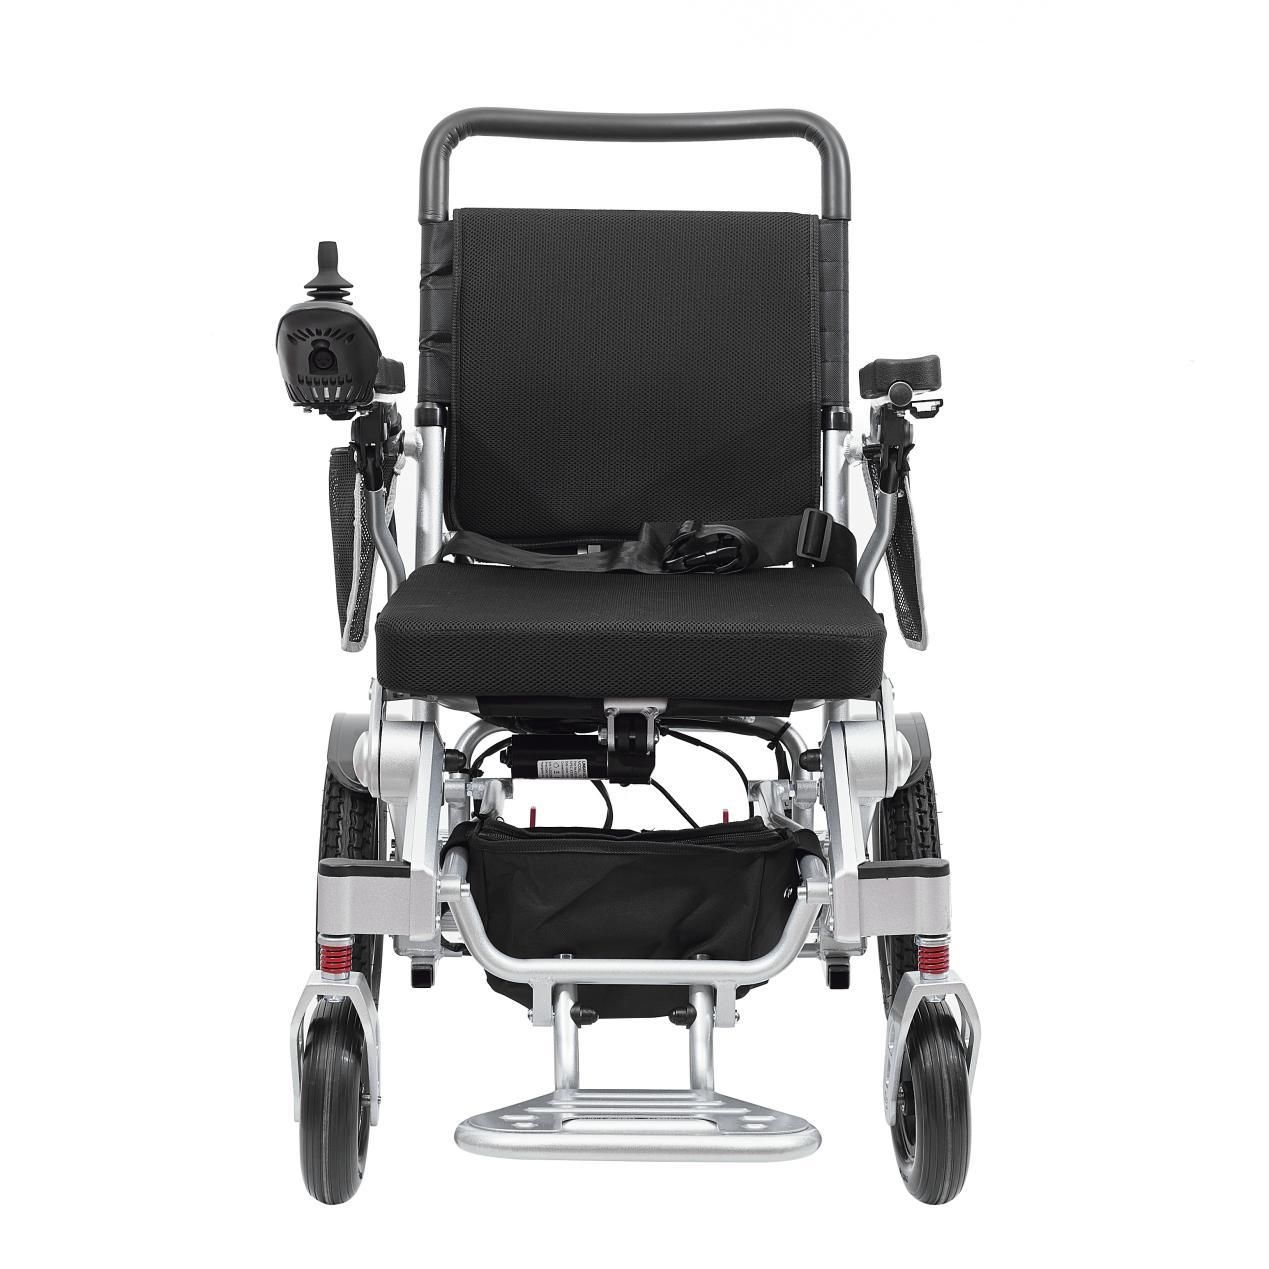 ¿Qué métodos de mantenimiento pueden prolongar la vida útil de la silla de ruedas de aleación de aluminio?